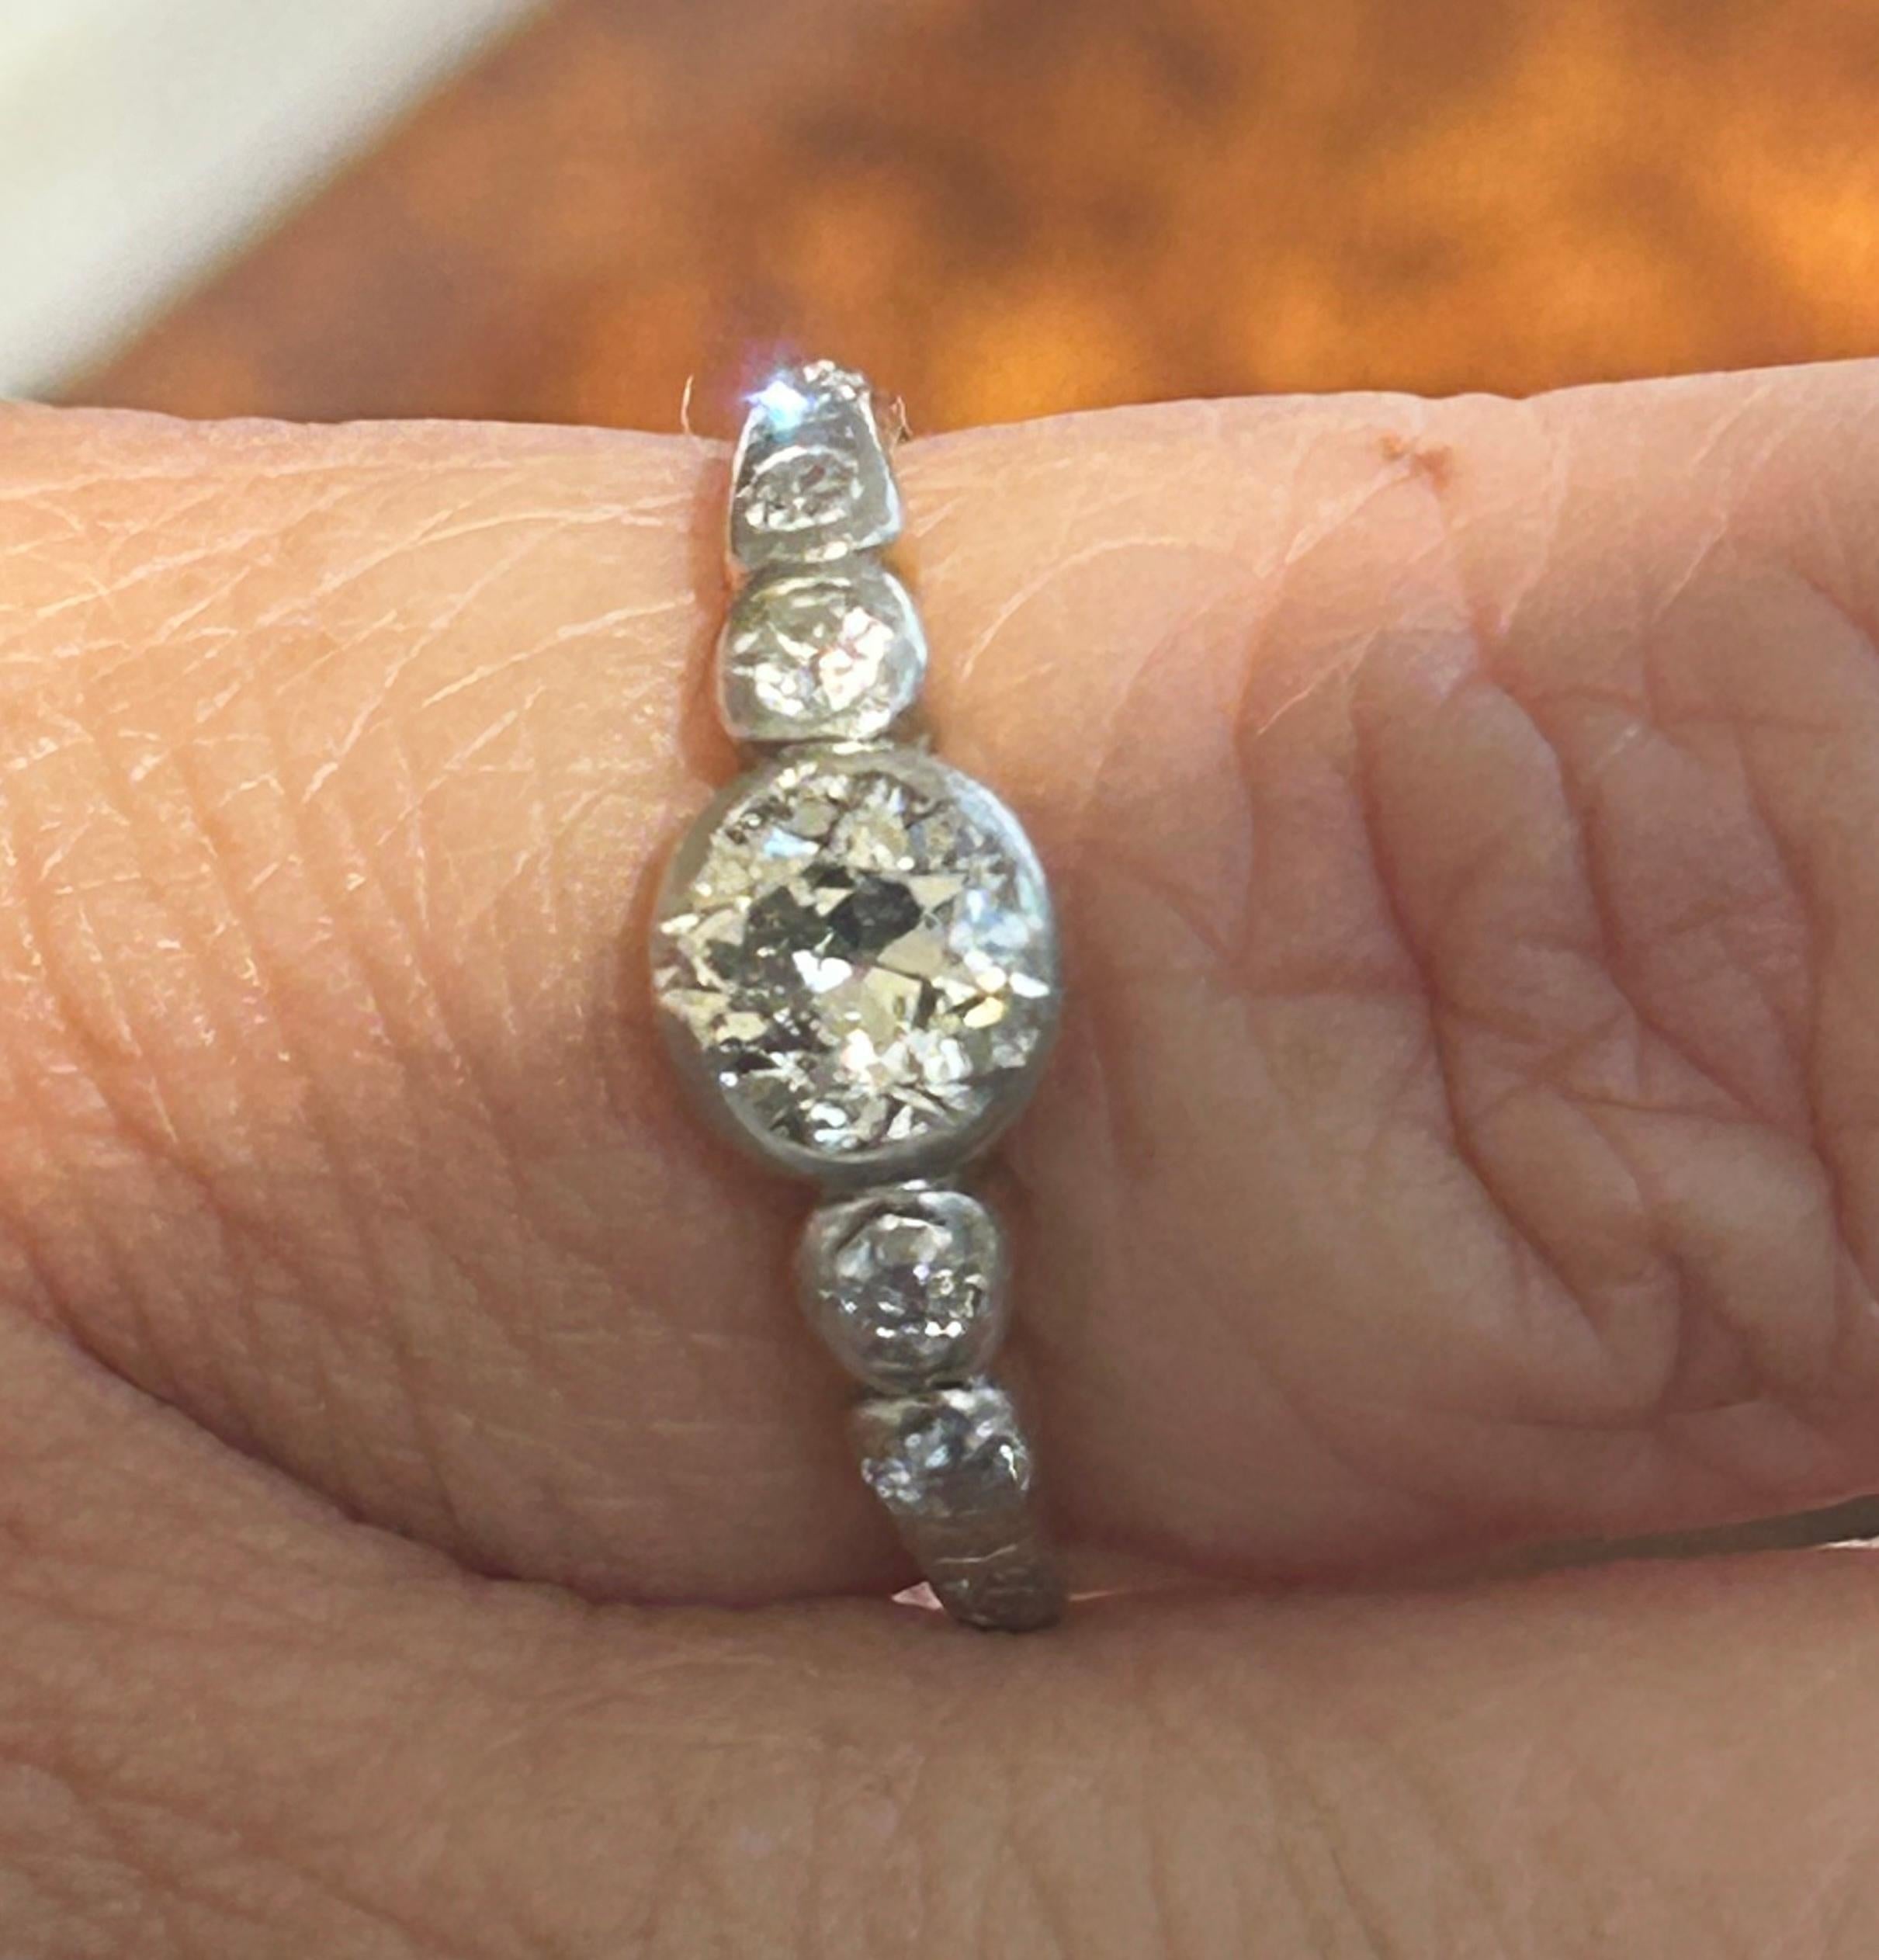 Unser edwardianischer Ring mit 9 Diamanten ist eine funkelnde Symphonie aus einer vergangenen Ära: Erleben Sie die Faszination der Edwardianischen Epoche mit unserem exquisiten Ring mit 9 Diamanten.  
Ausgezeichnetes Design und Details:
Epoche: